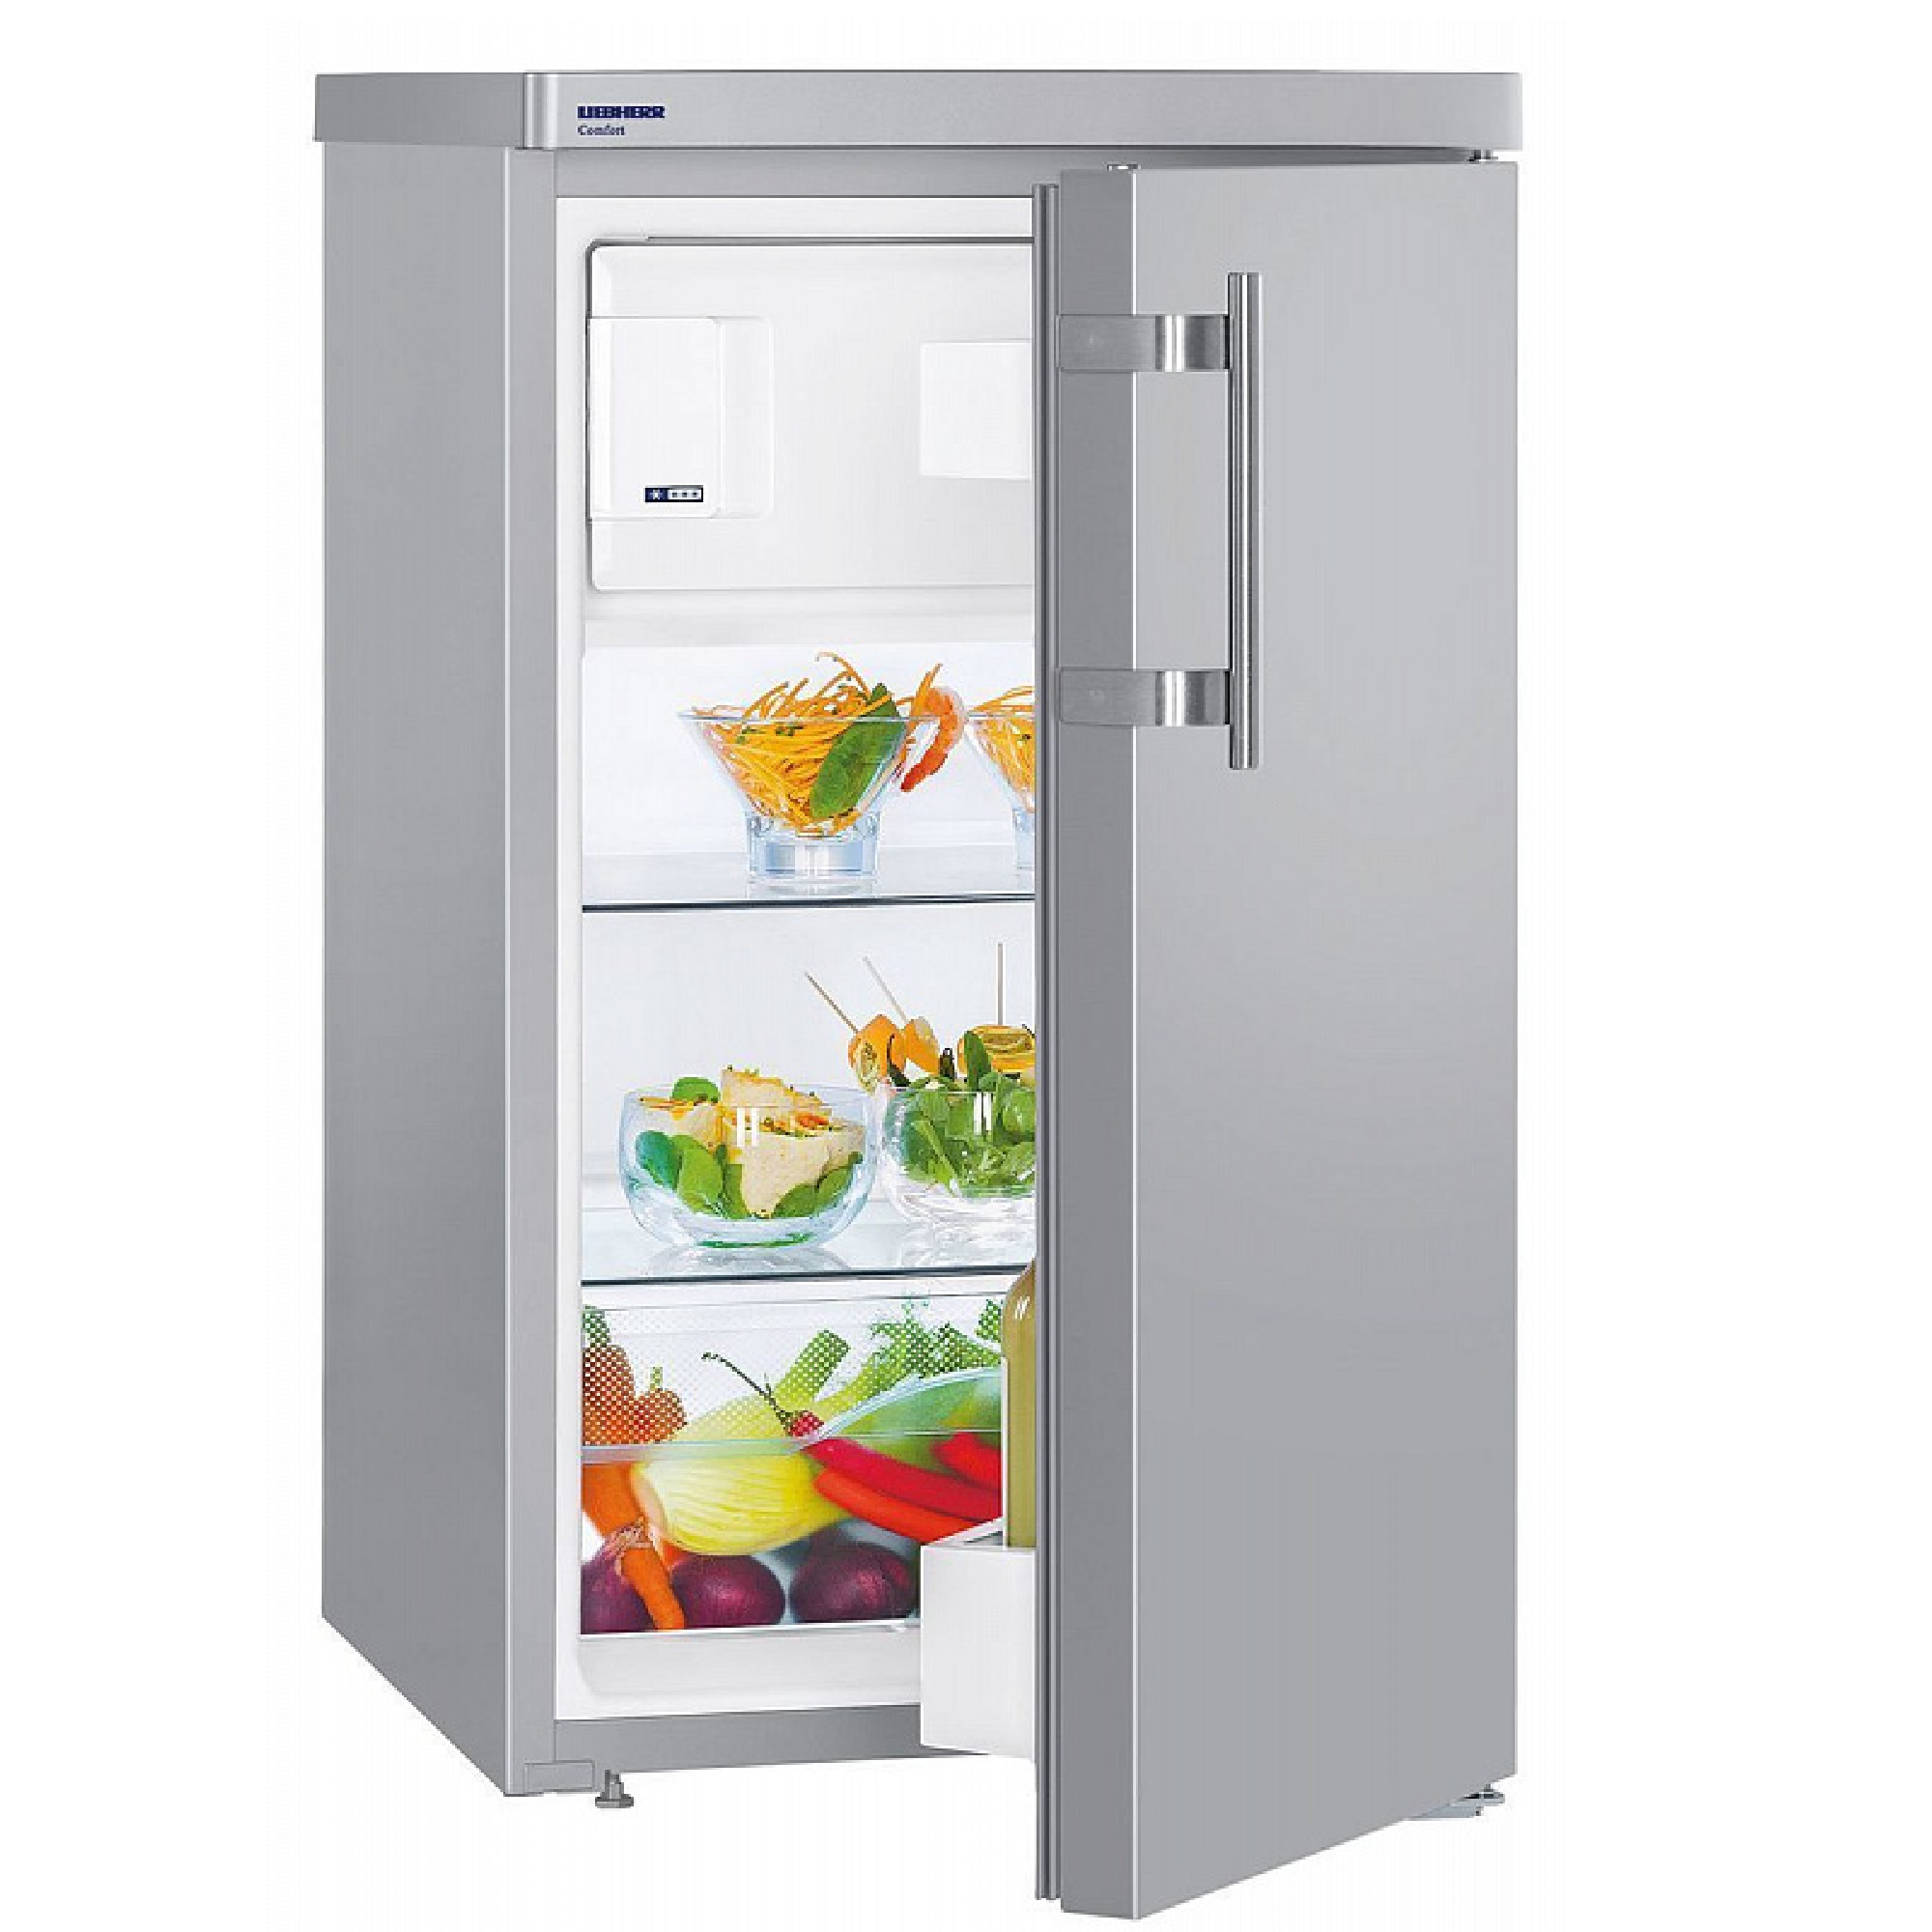 Купить холодильник в сочи. Однокамерный холодильник Liebherr TSL 1414. Холодильник Liebherr TSL 1414 Comfort. Холодильник Либхер однокамерный с морозилкой. Холодильник Либхер однокамерный с морозилкой 140.